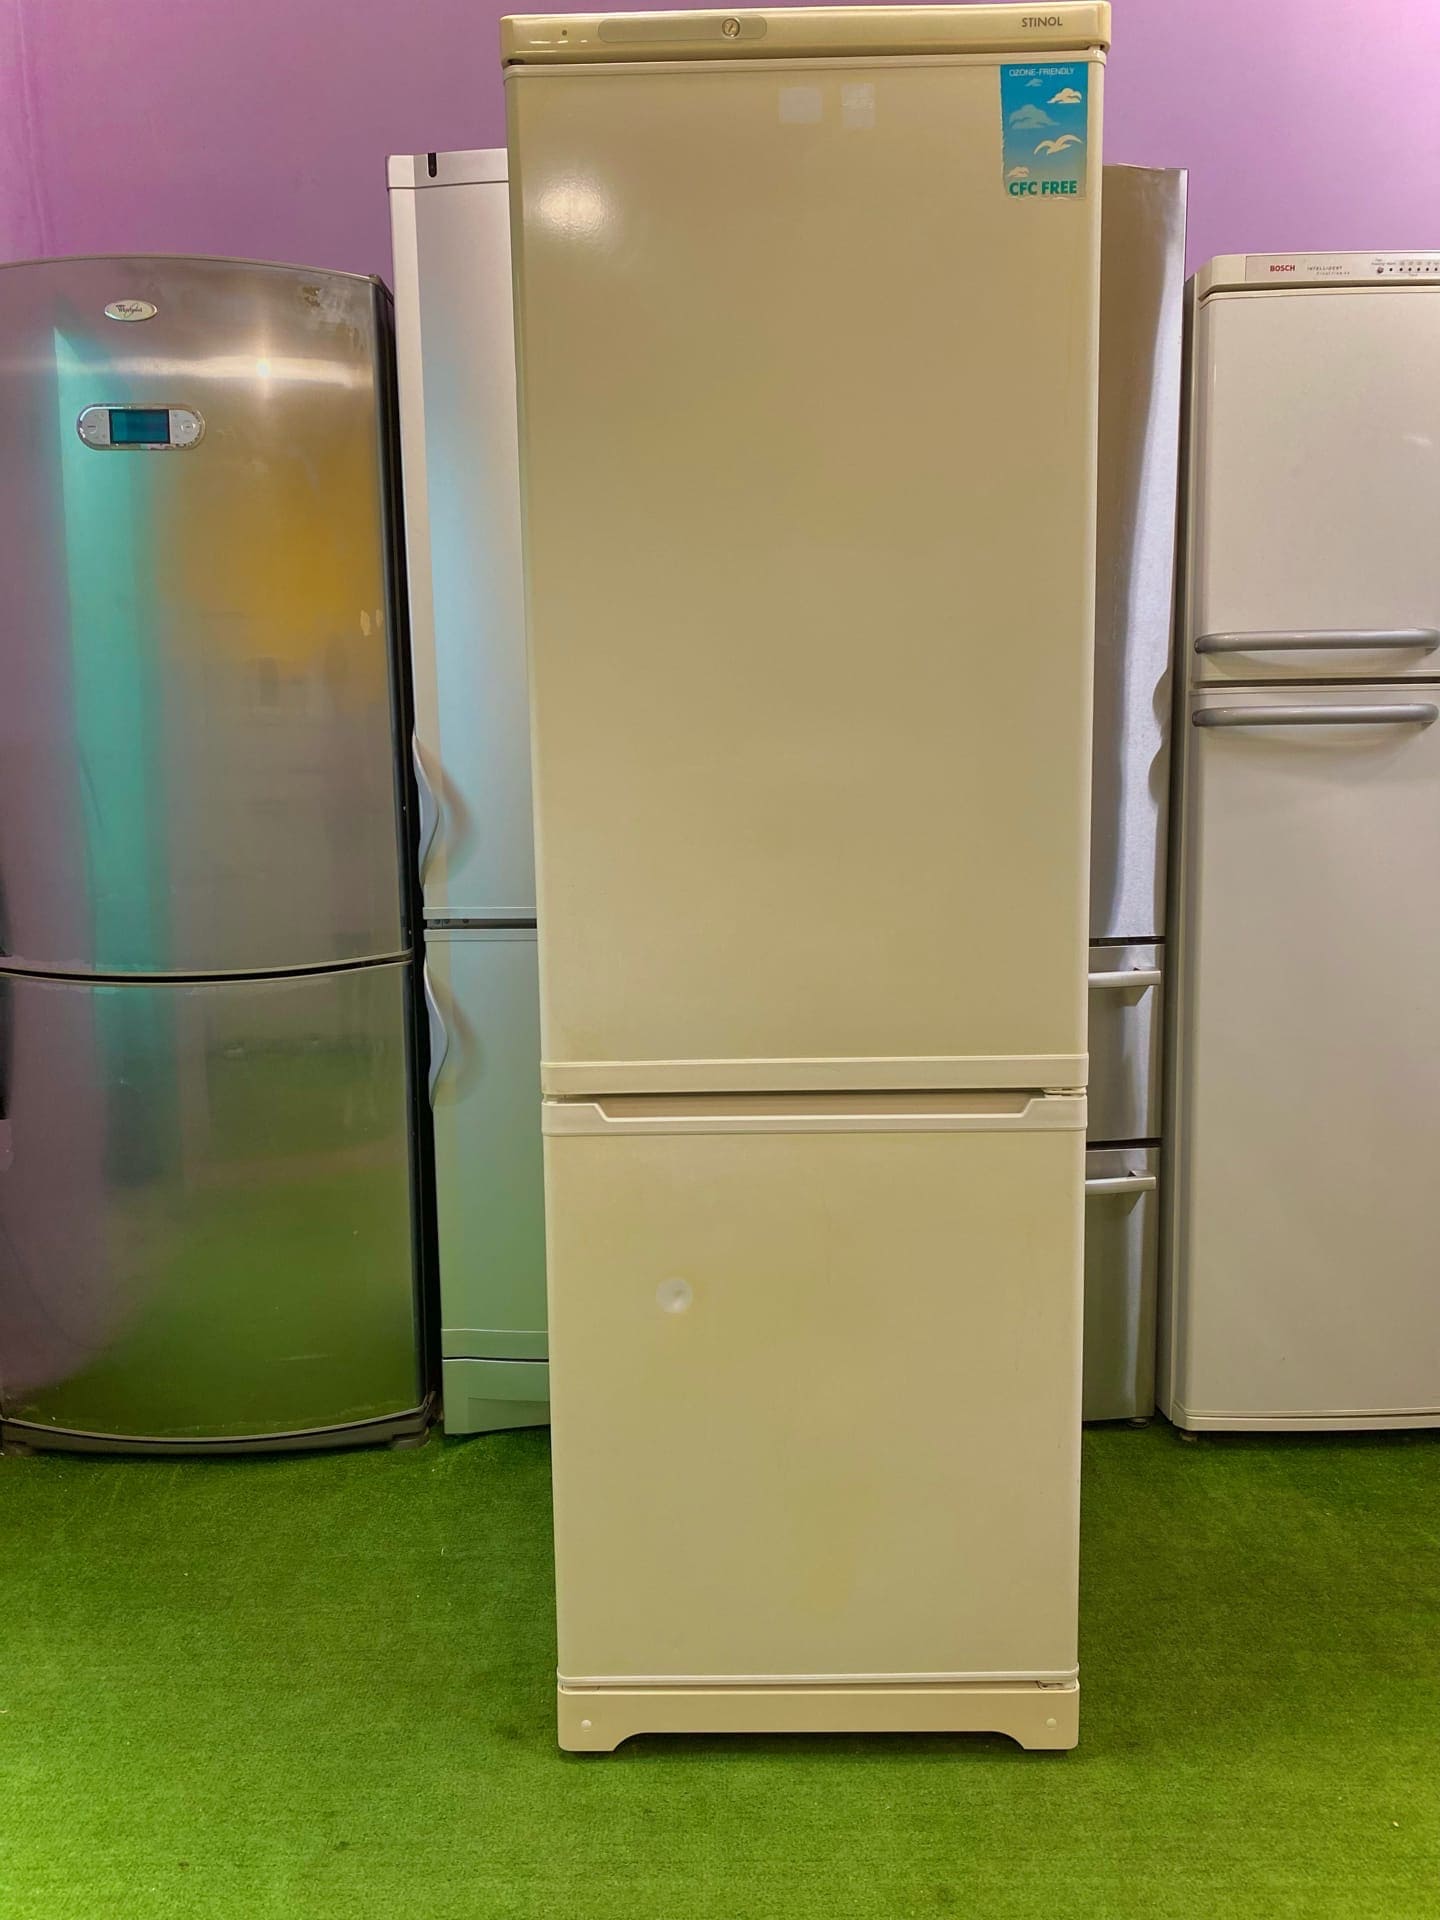 Куплю холодильник б у спб. Холодильник б/у. Авито холодильник. Авито бытовая техника холодильники. Авито холодильники б/у.